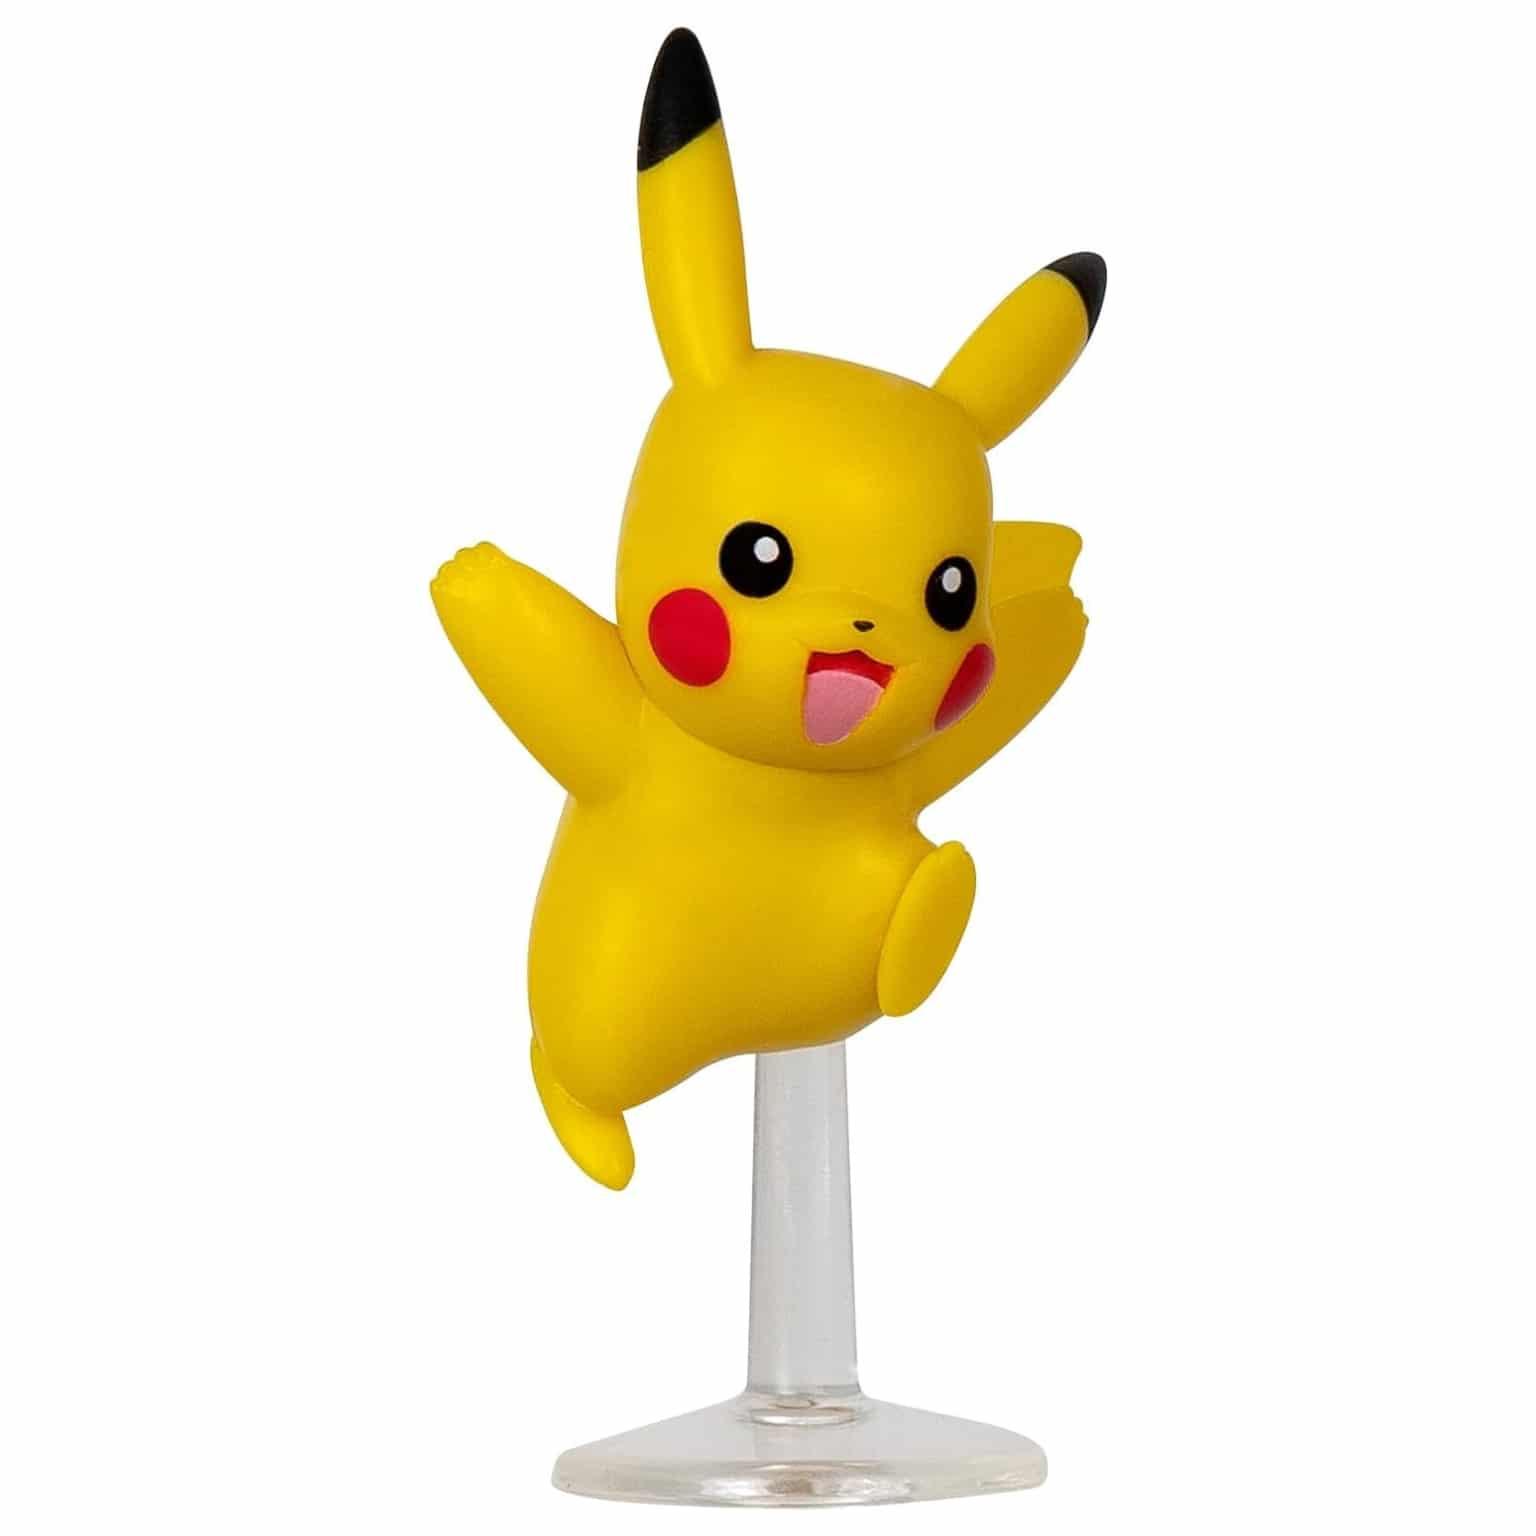 Figuras de batalha Pokémon – Omanyte, Pikachu e Lucario - Brincatoys